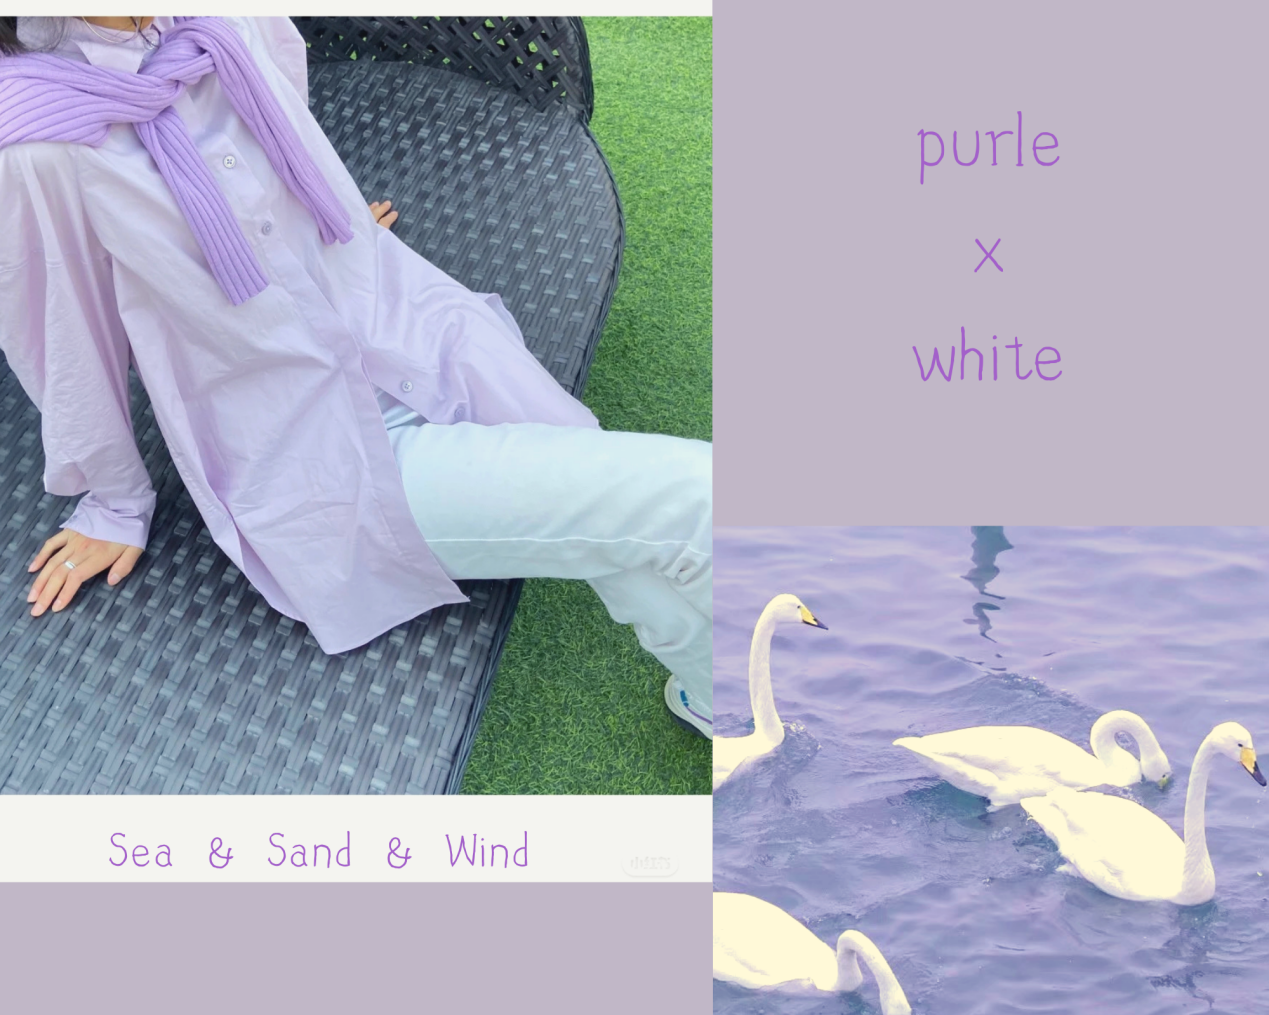 谁说皮肤白才能穿紫色？掌握以下3个环节，也能穿出温柔清新感